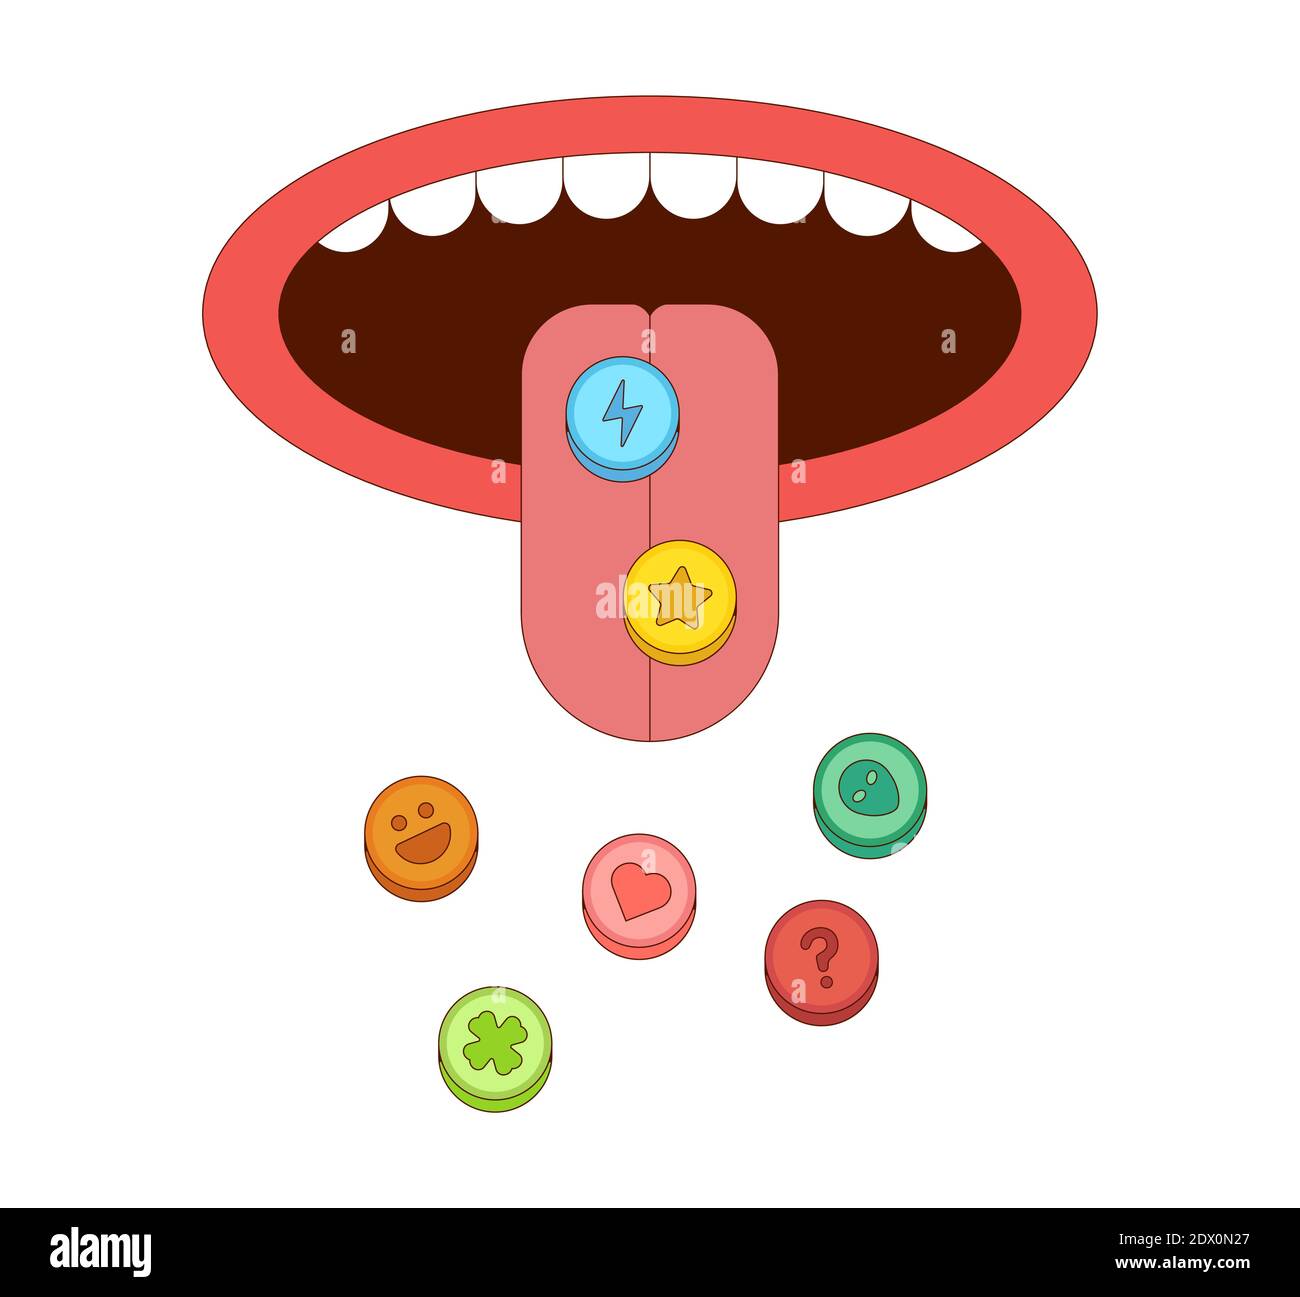 Zunge mit Ecstasy Pillen Vektor-Illustration in Cartoon-Stil. Drogenmissbrauch sucht Konzept Stock Vektor